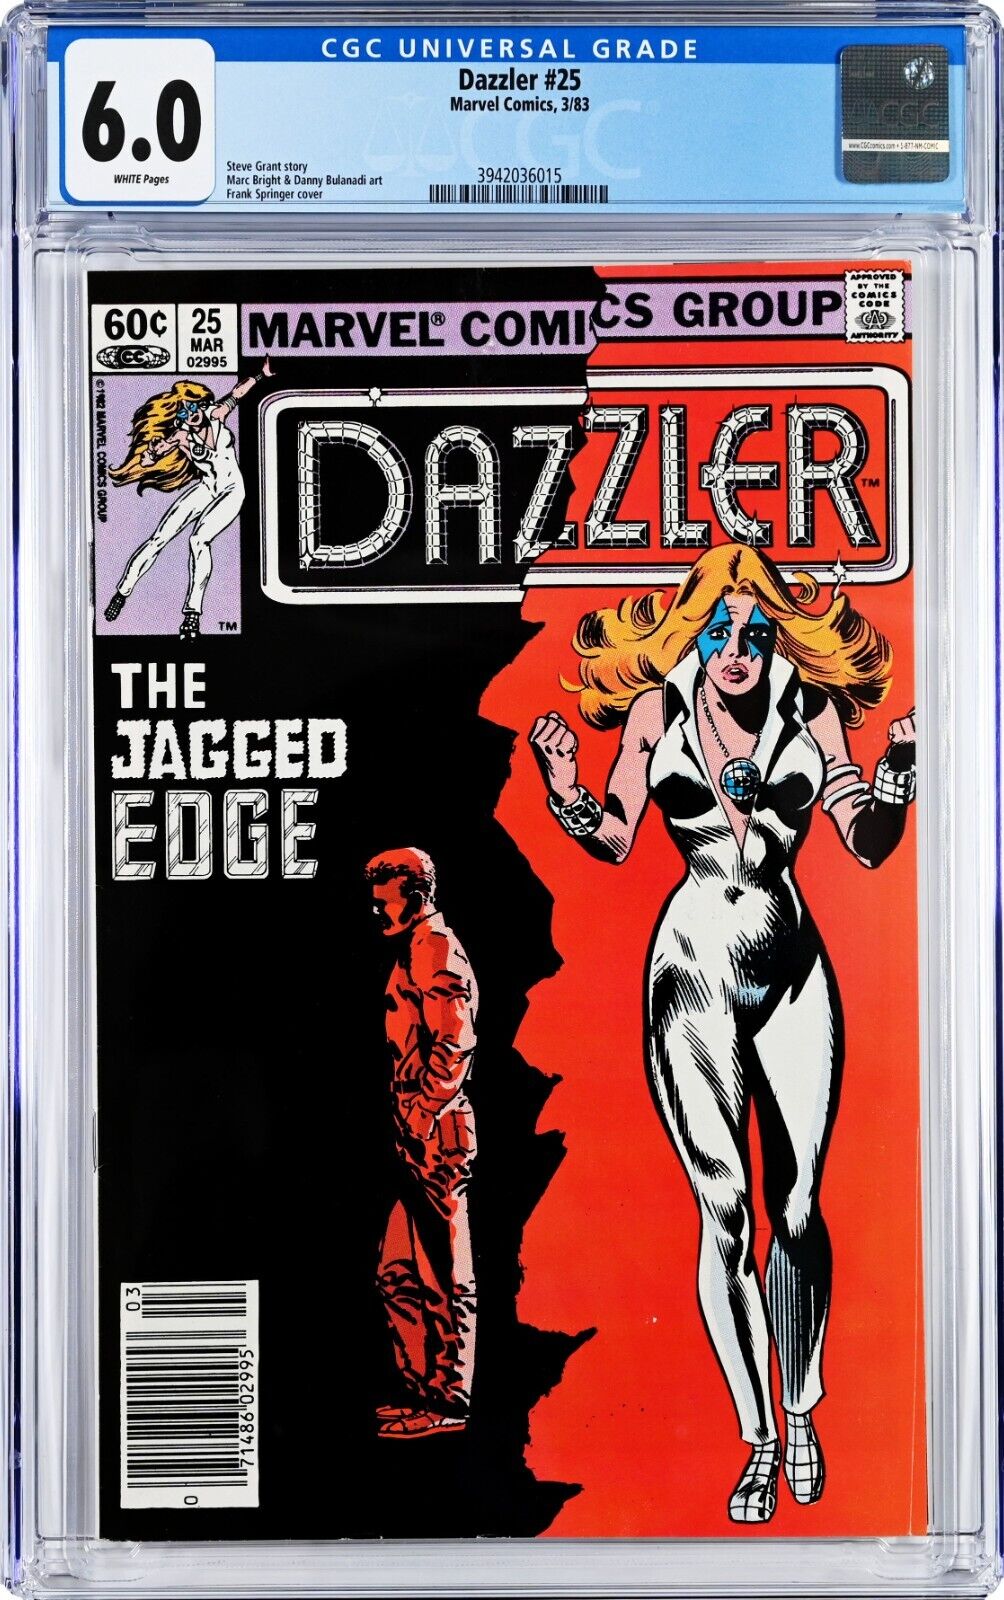 Dazzler #25 CGC 6.0 (Mar 1983, Marvel) Steve Grant Story, Frank Springer Cover